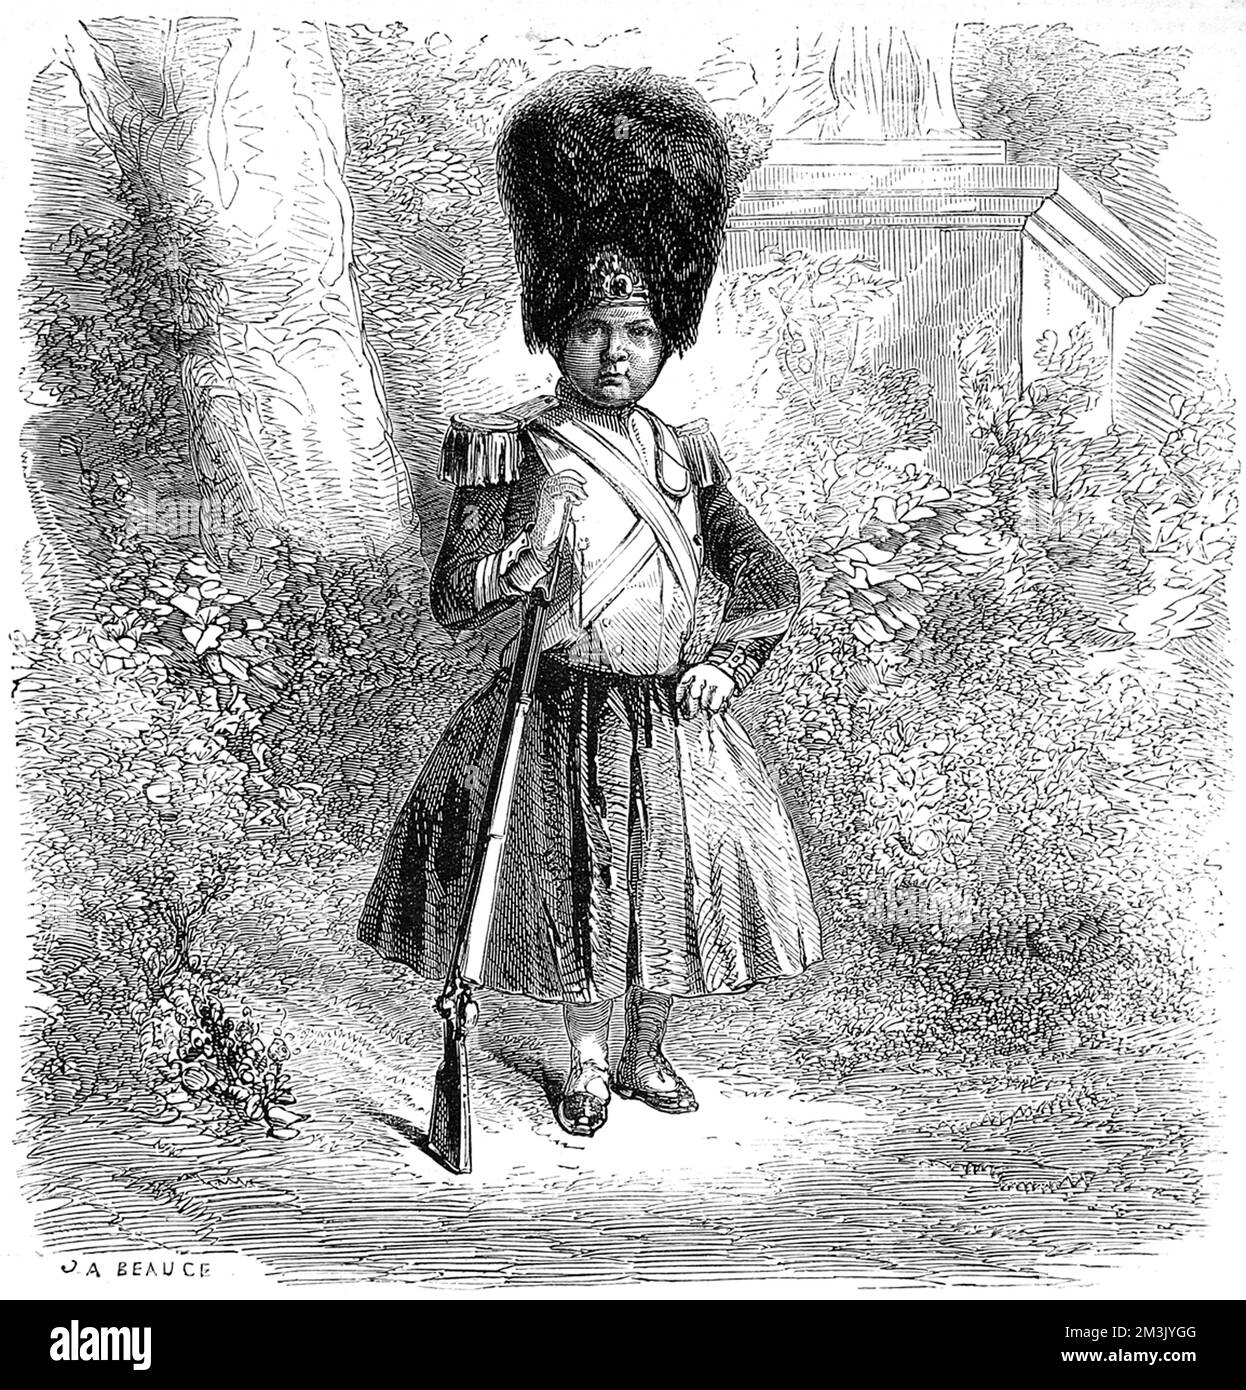 El niño Príncipe Imperial vestido militar completo, con un pequeño rifle, prefigurando su muerte en uniforme veinte años más tarde en 1879, 1st de junio, durante una emboscada en las guerras de Zulu. Fecha: 1859 Foto de stock